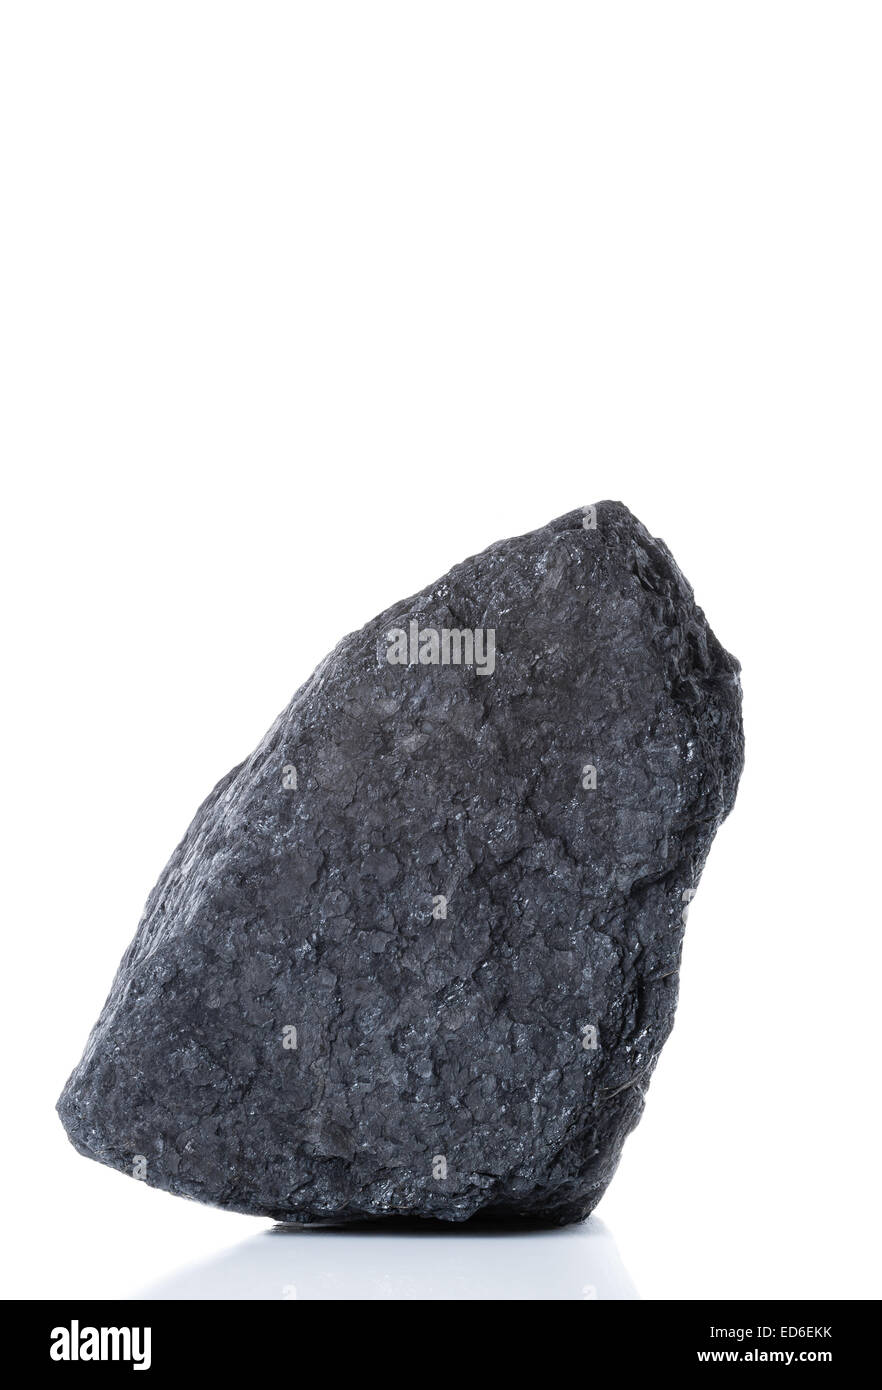 Un grand morceau de charbon bitumineux noir sur fond blanc Banque D'Images